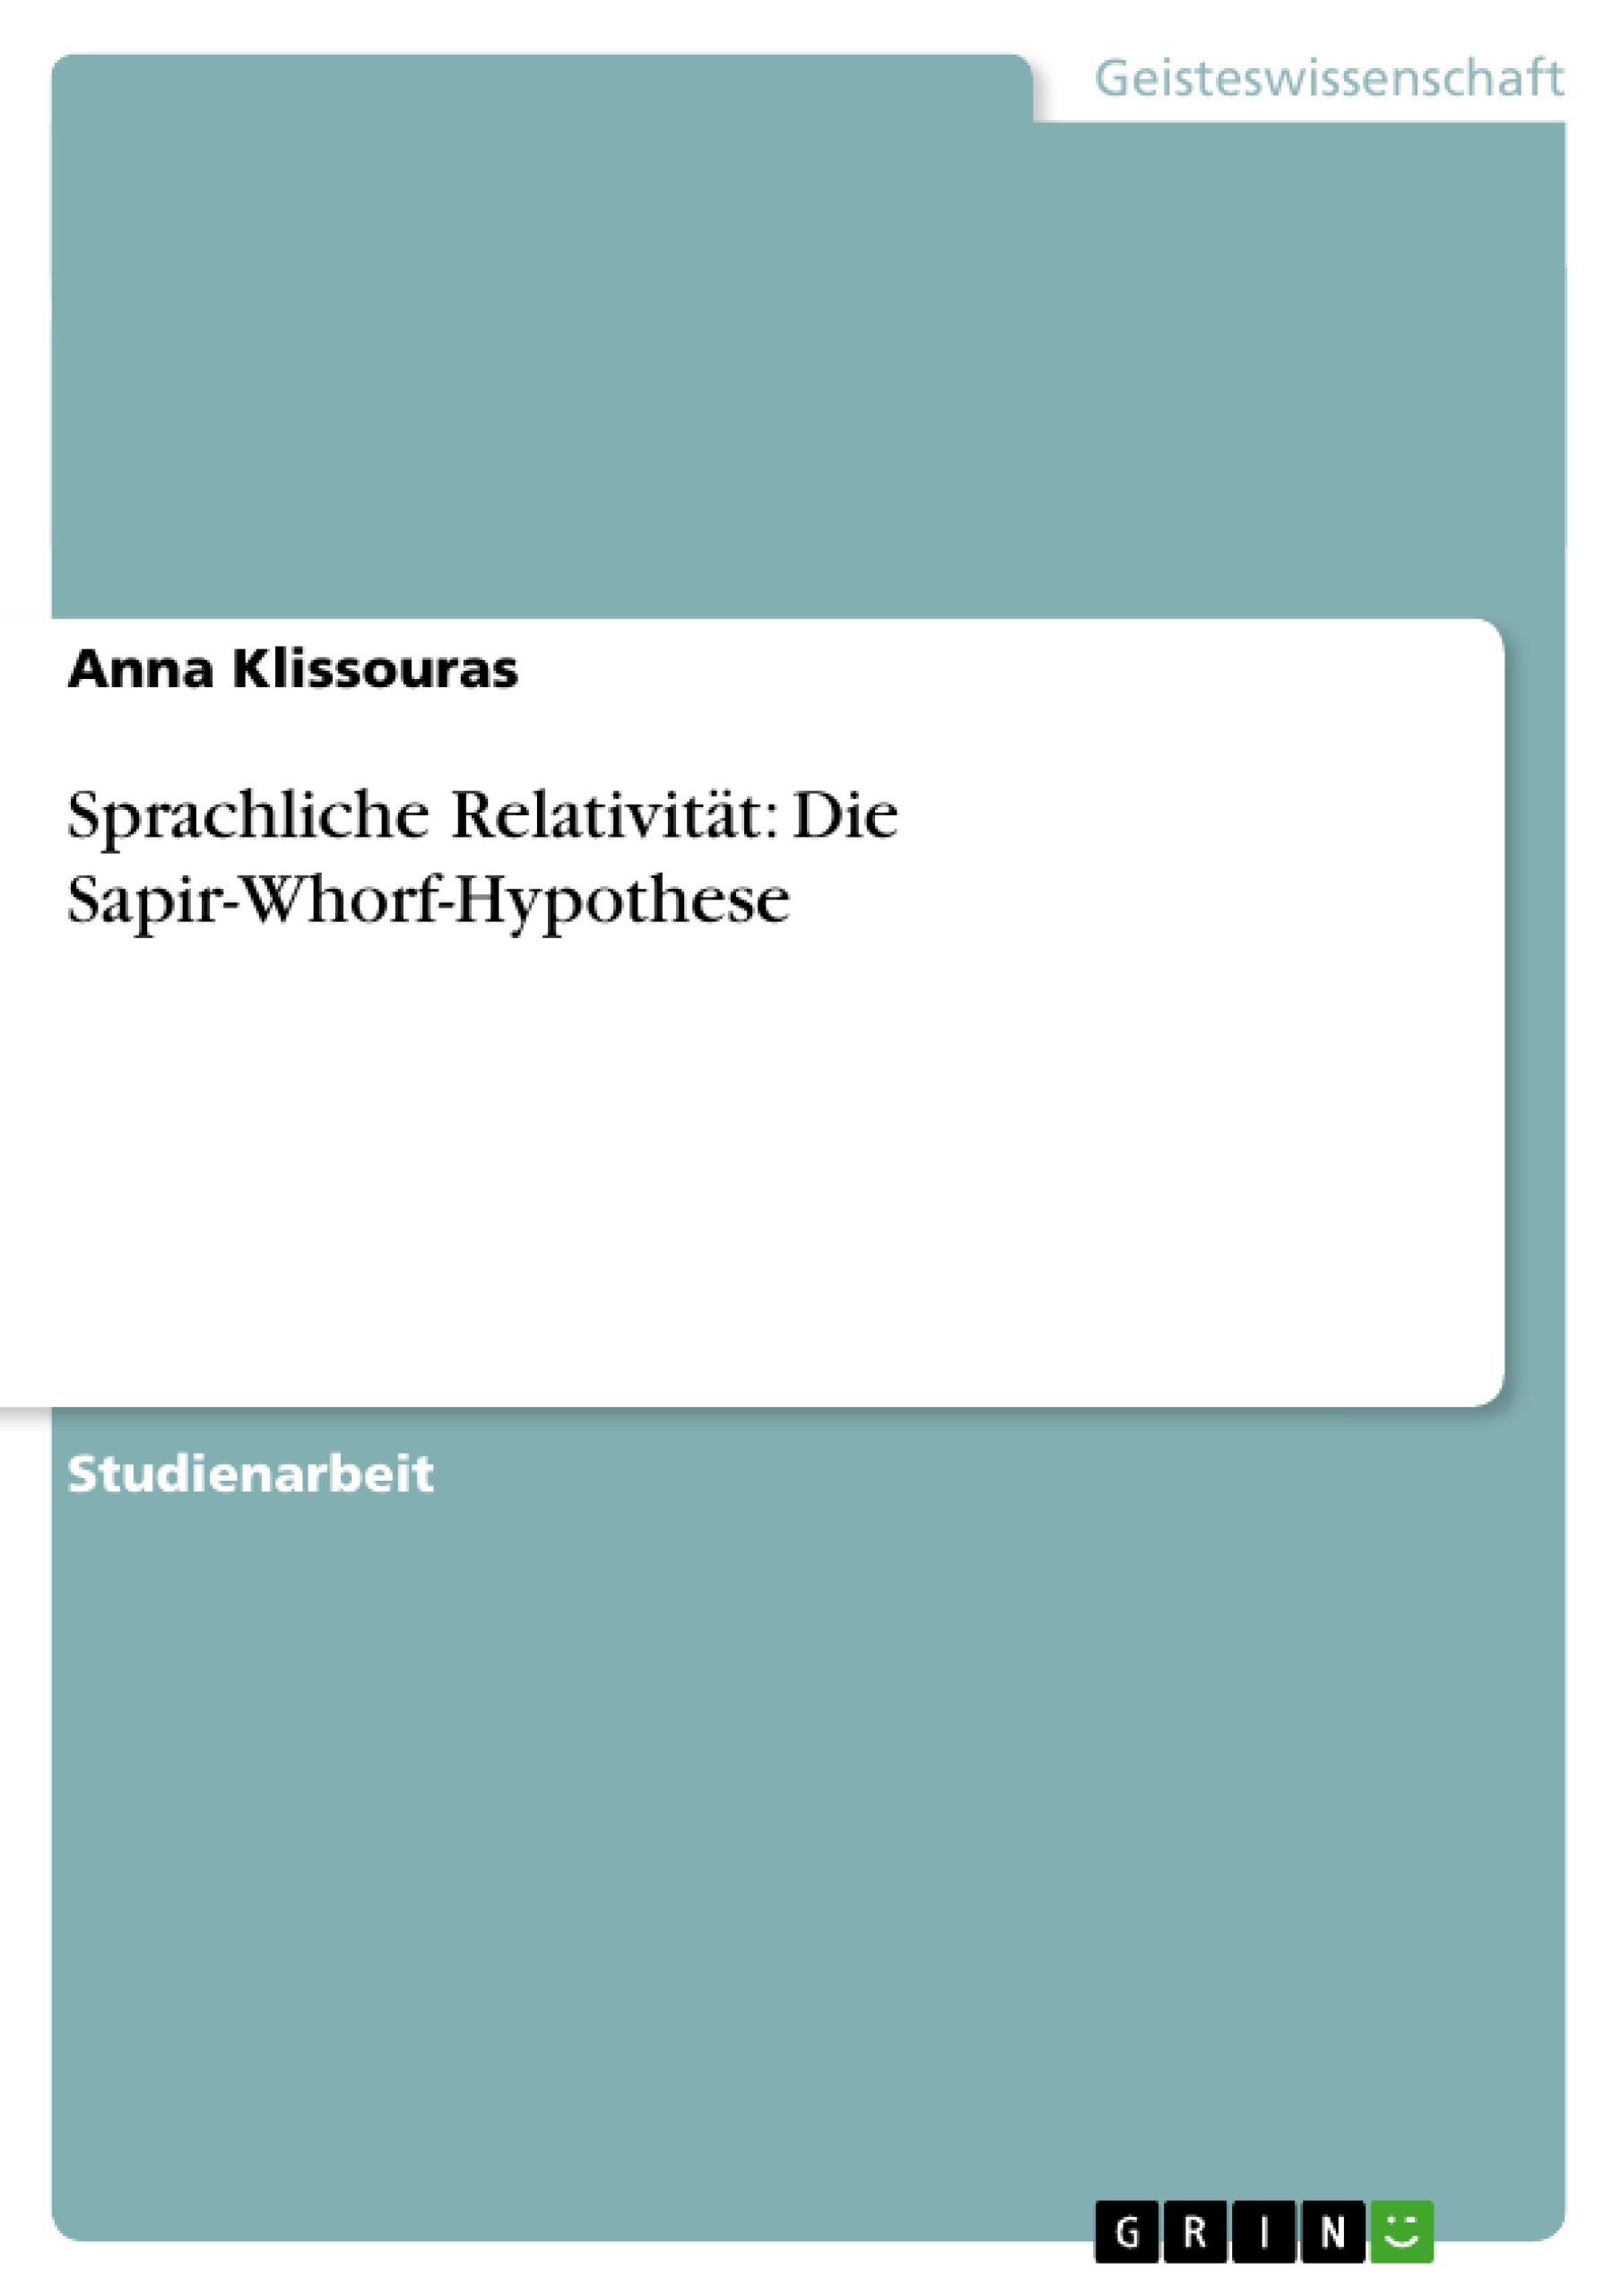 Titre: Sprachliche Relativität: Die Sapir-Whorf-Hypothese